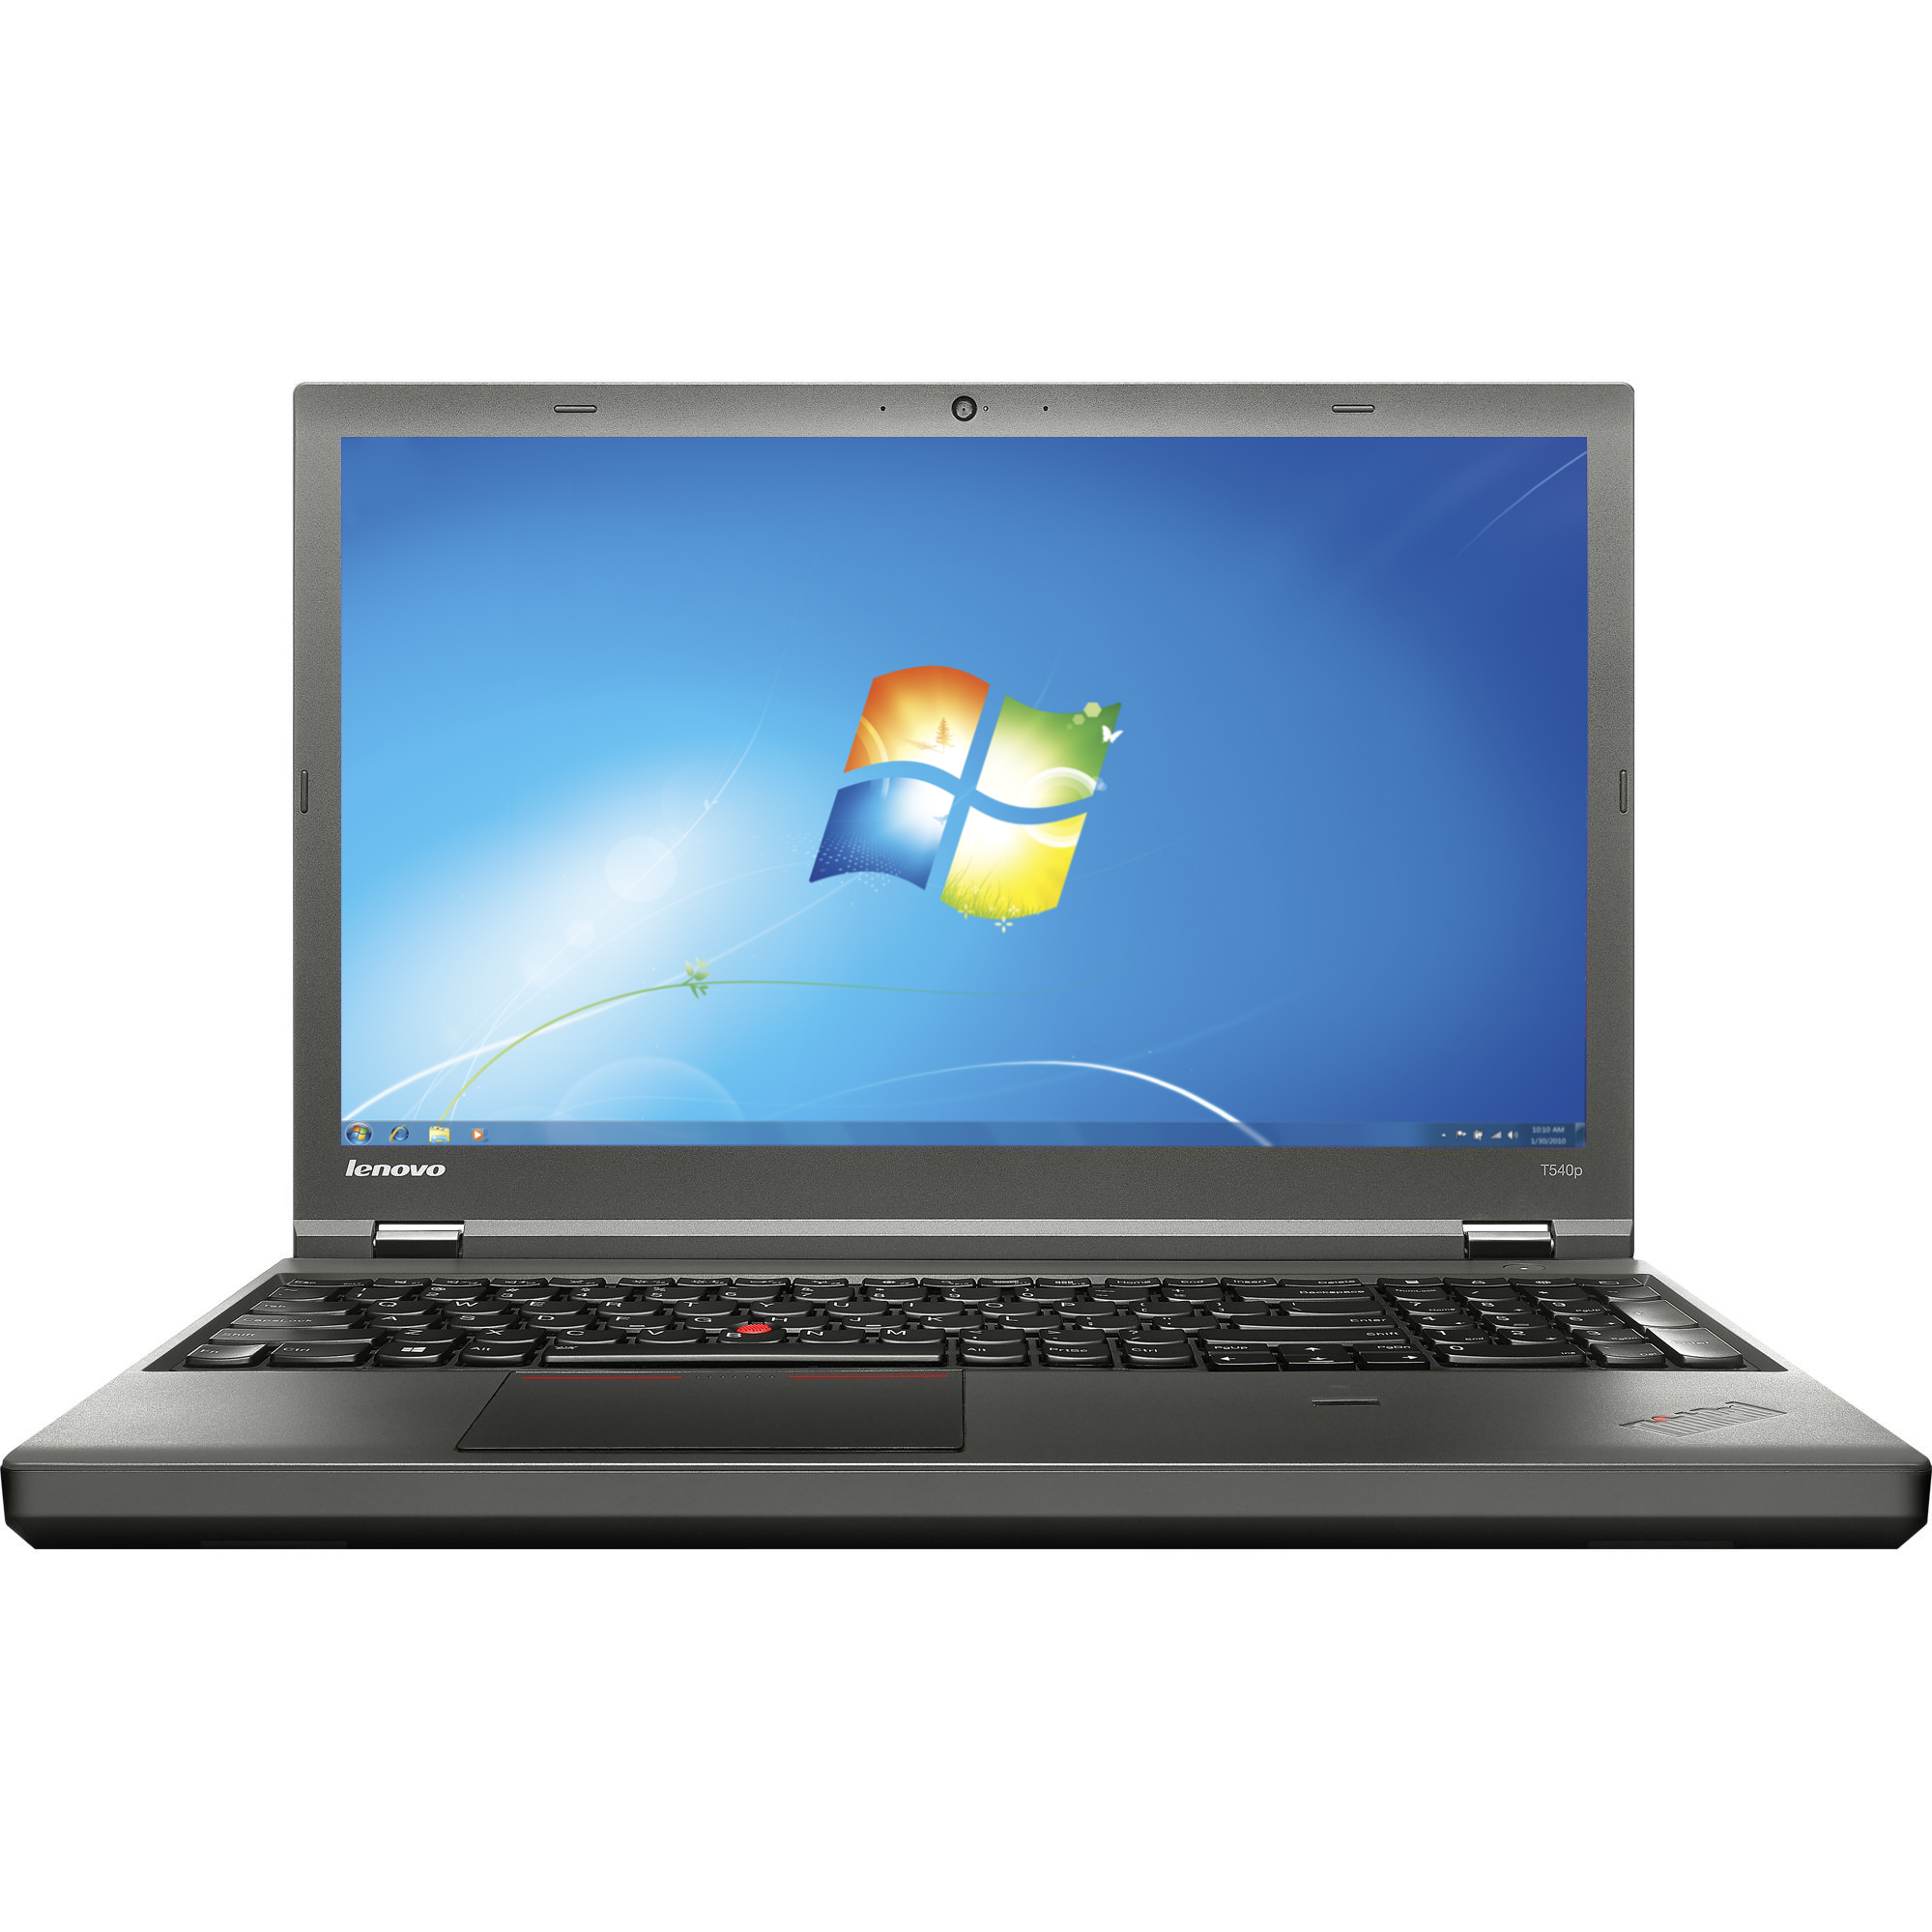 Notebook Lenovo ThinkPad T540p 15.5 3K Intel Core i7-4600M 730M-1GB RAM 8GB HDD 1TB Windows 7 Pro Negru title=Notebook Lenovo ThinkPad T540p 15.5 3K Intel Core i7-4600M 730M-1GB RAM 8GB HDD 1TB Windows 7 Pro Negru